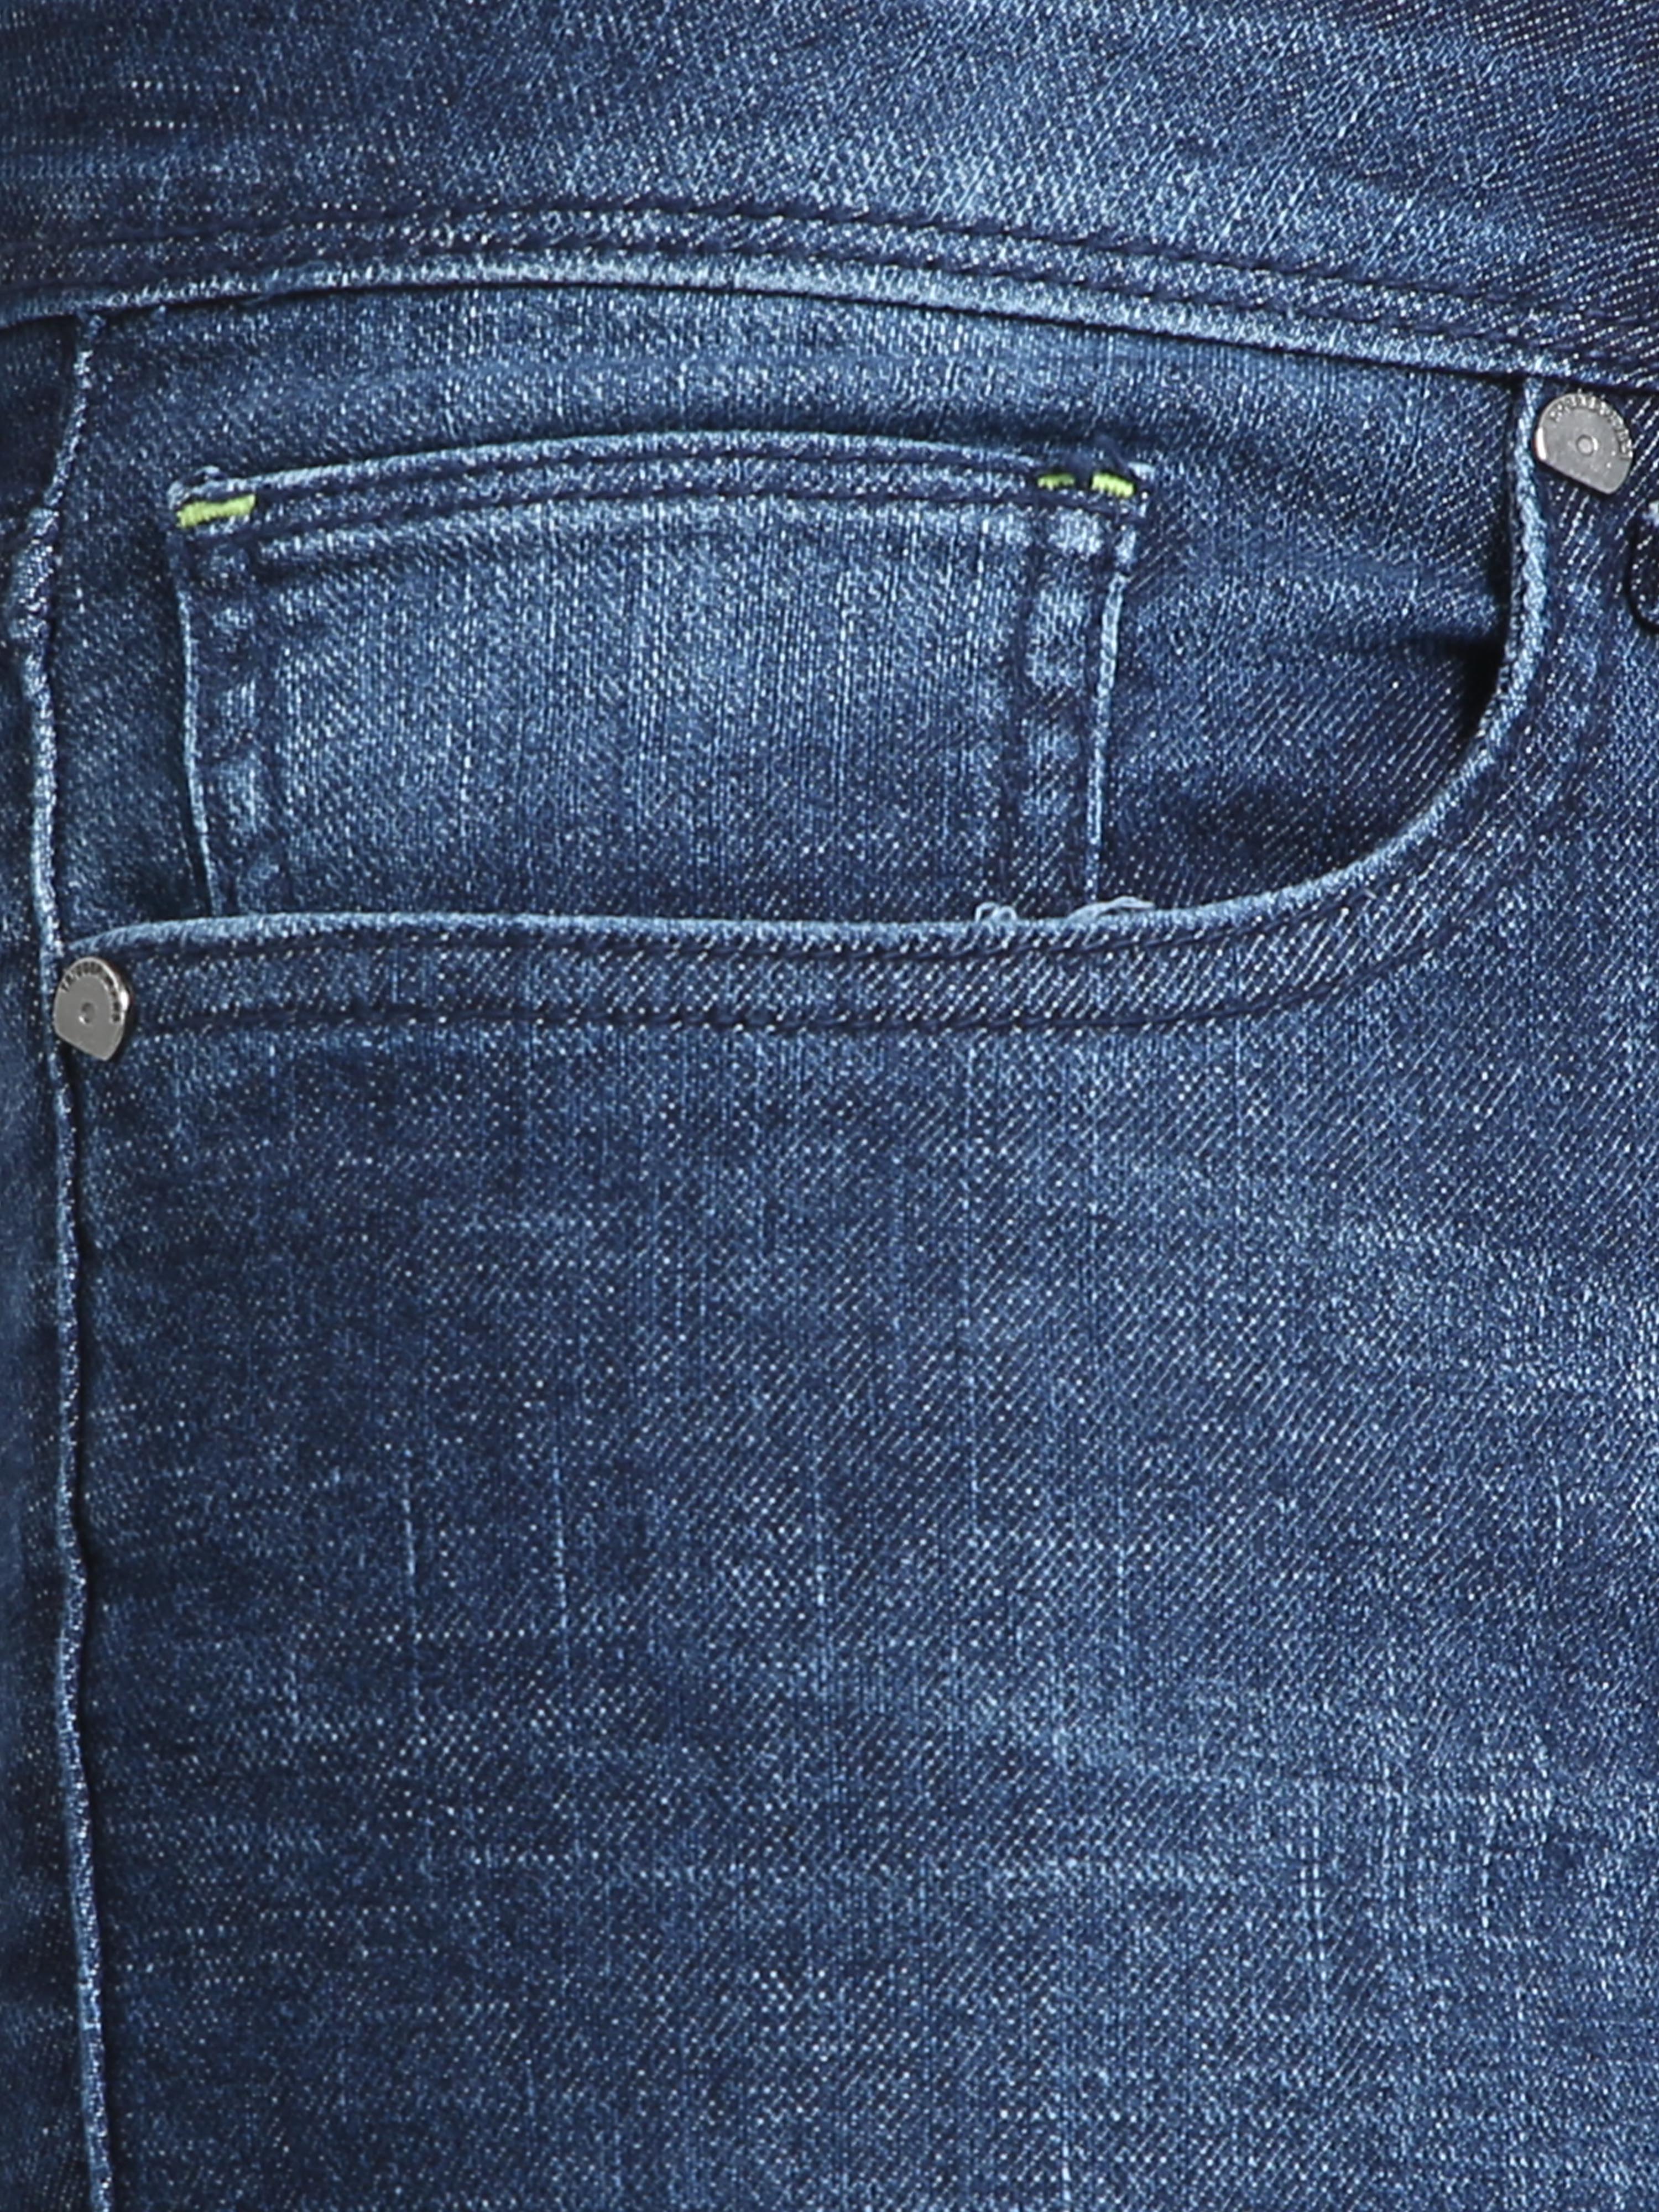 Blue yonder Motion Men's Slim-Fit Jeans